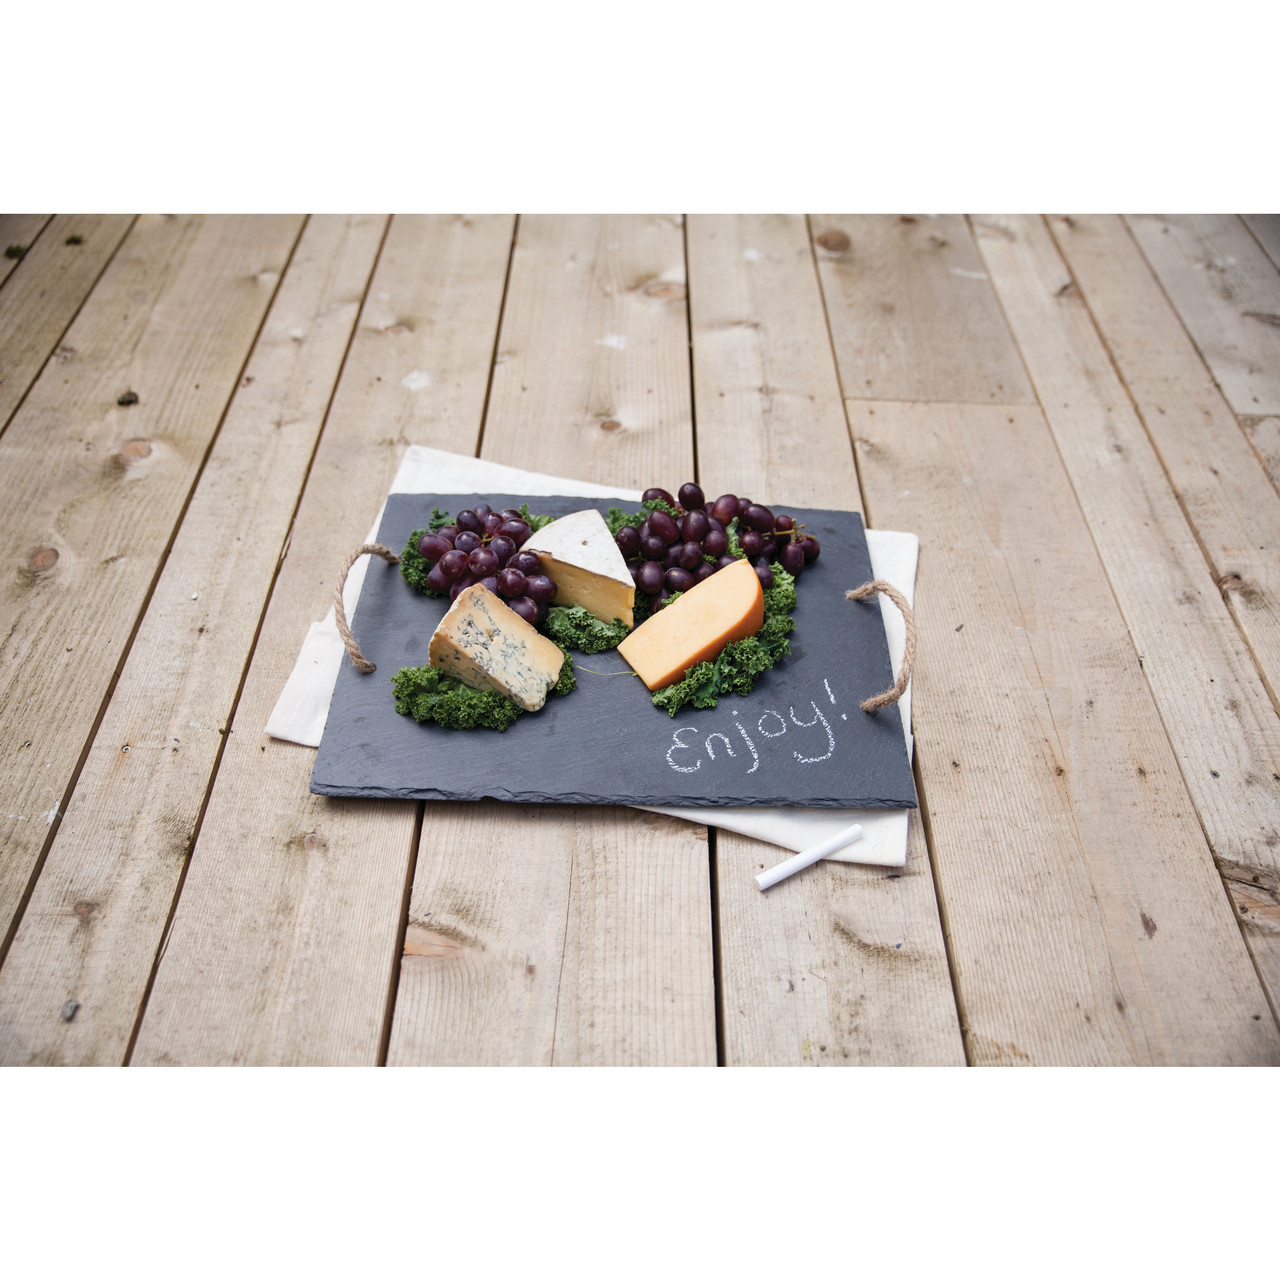 Slate Cheese Board by Twine®